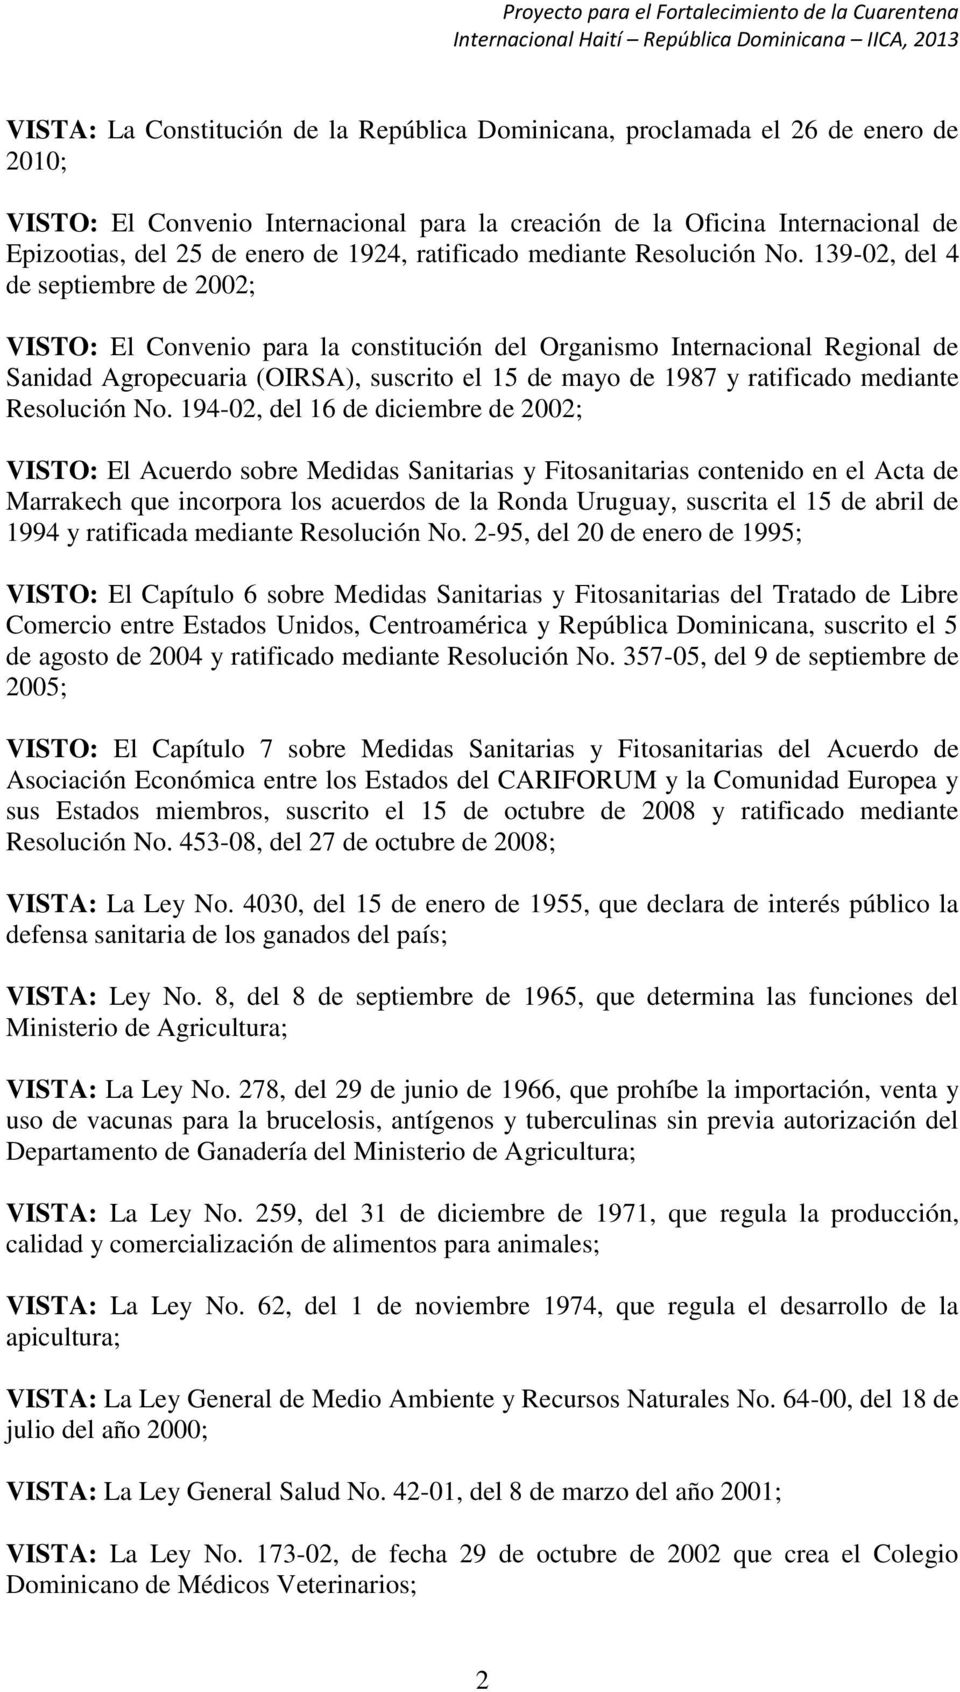 139-02, del 4 de septiembre de 2002; VISTO: El Convenio para la constitución del Organismo Internacional Regional de Sanidad Agropecuaria (OIRSA), suscrito el 15 de mayo de 1987 y ratificado mediante